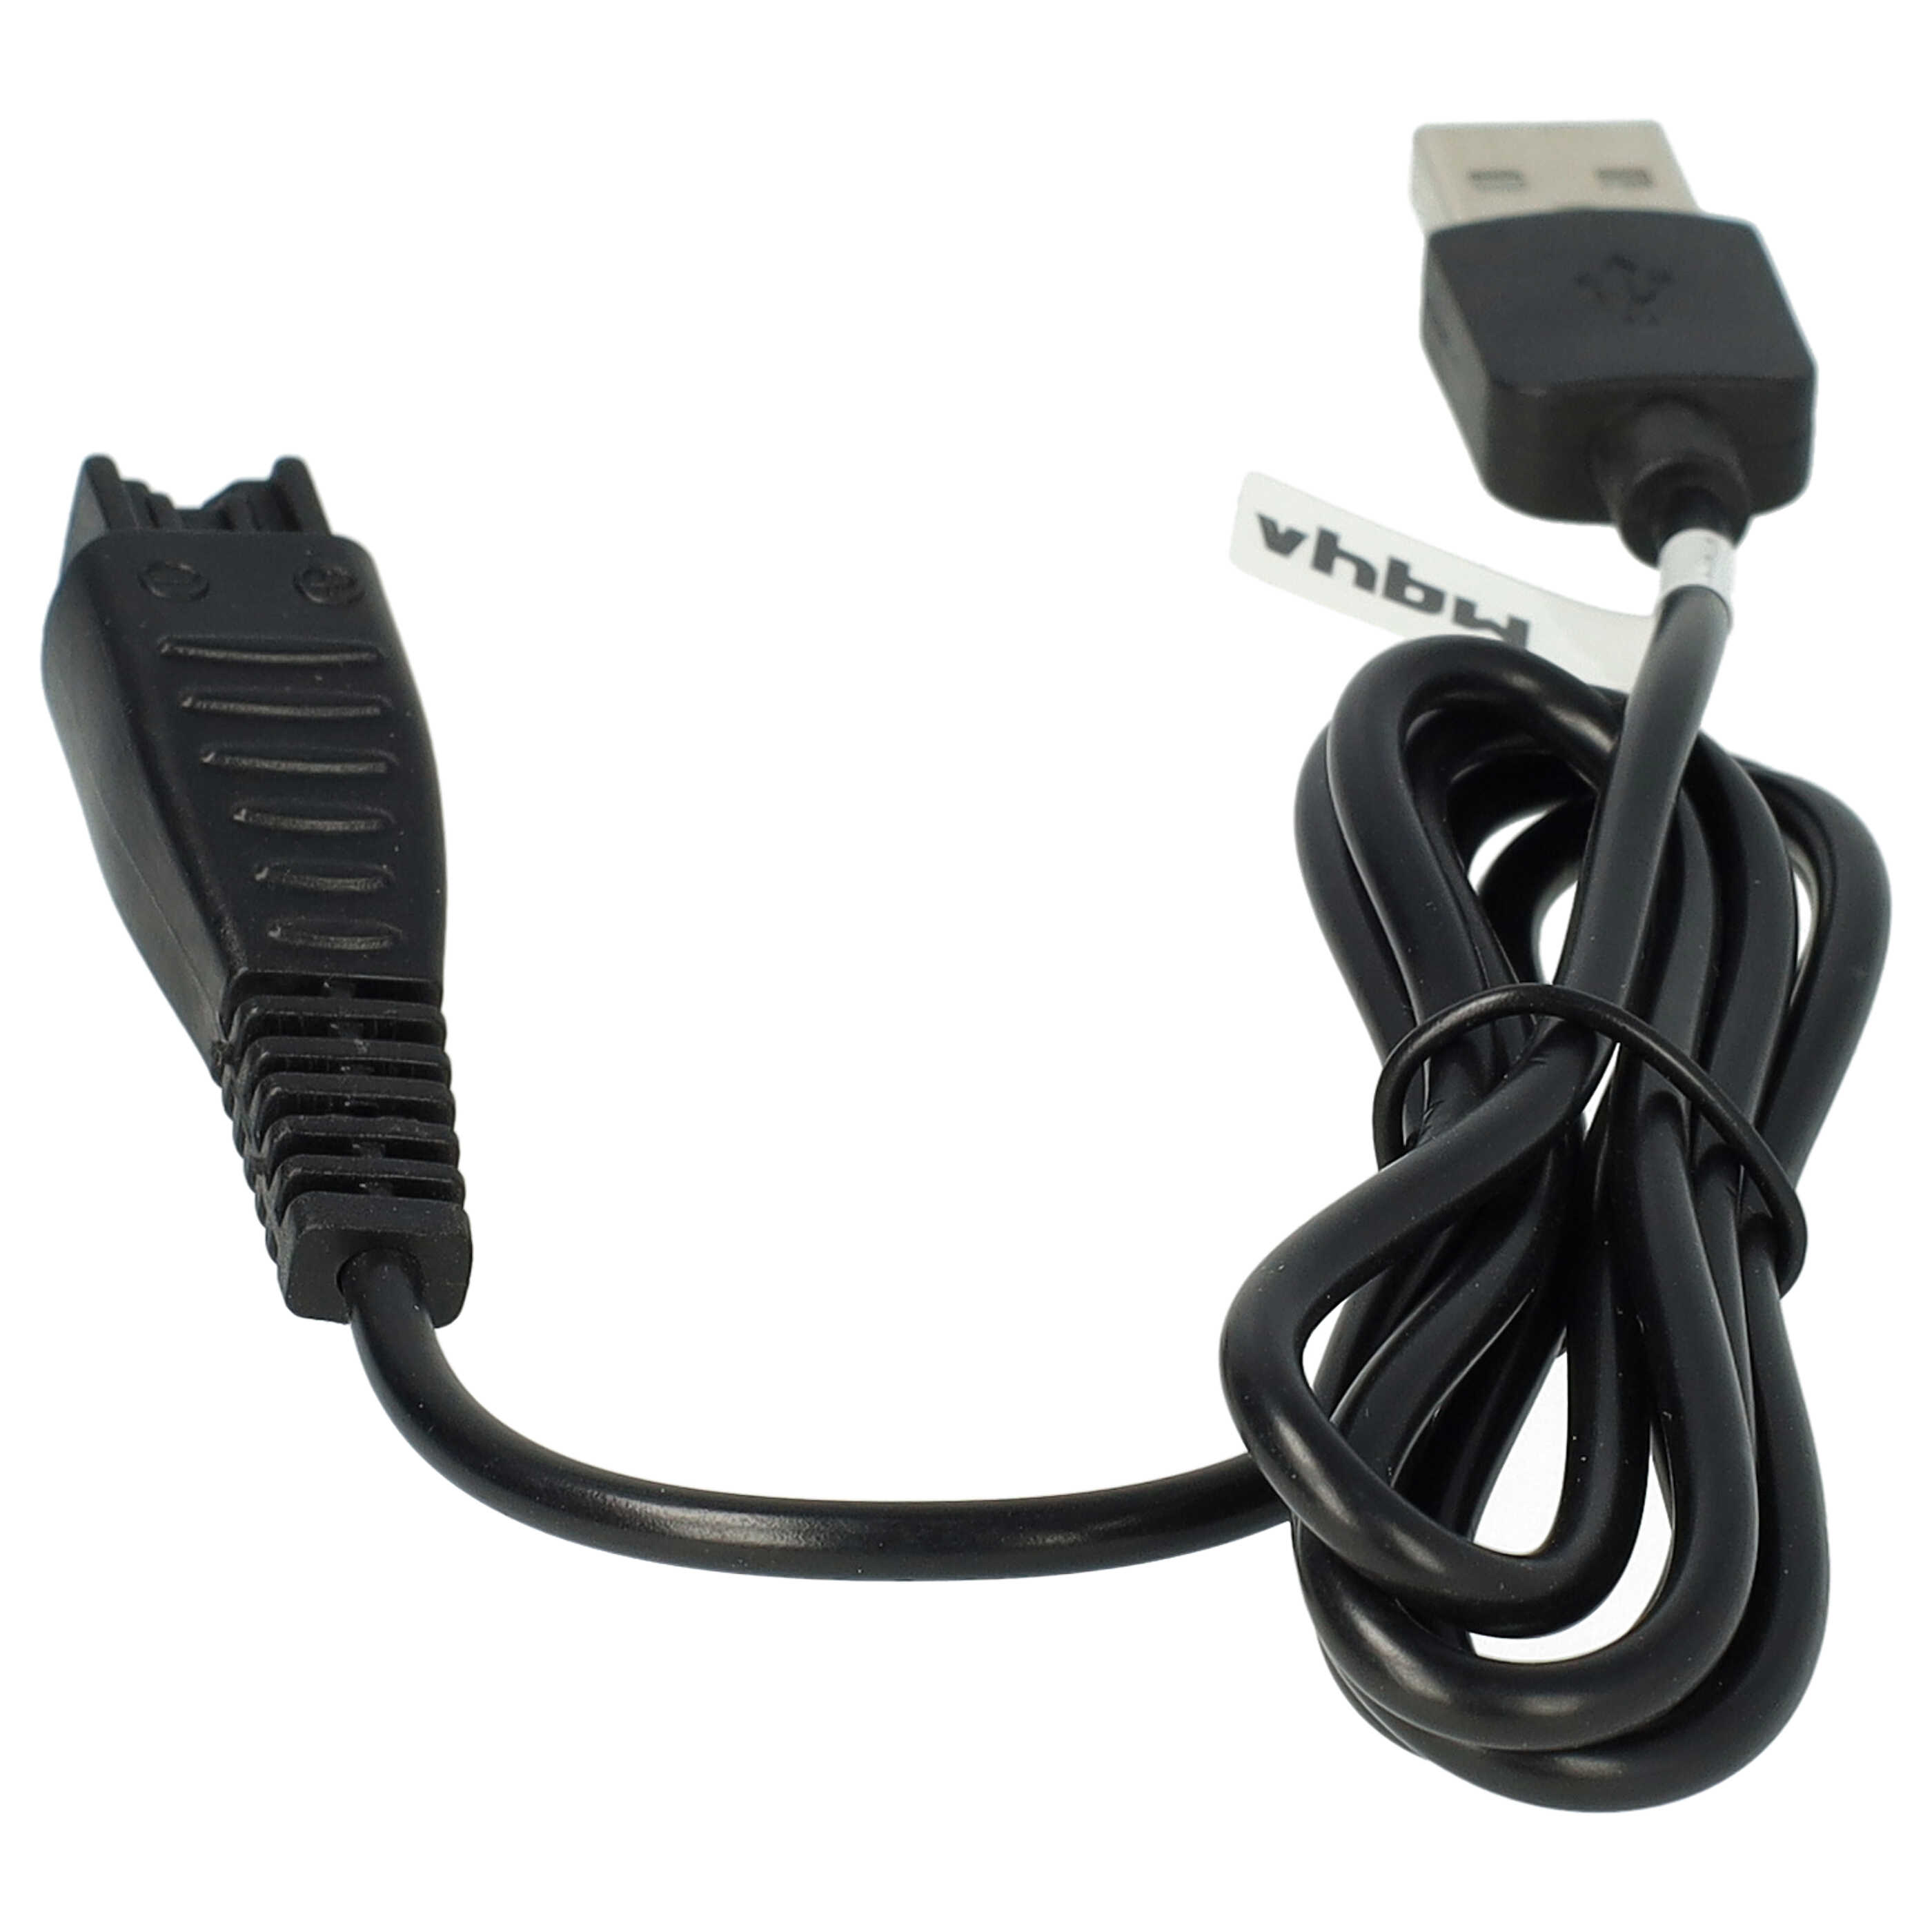 Kabel do ładowania golarki elektrycznej Panasonic zamiennik Panasonic RE7-59, RE7-68, RE7-51, RE7-40 - 120 cm